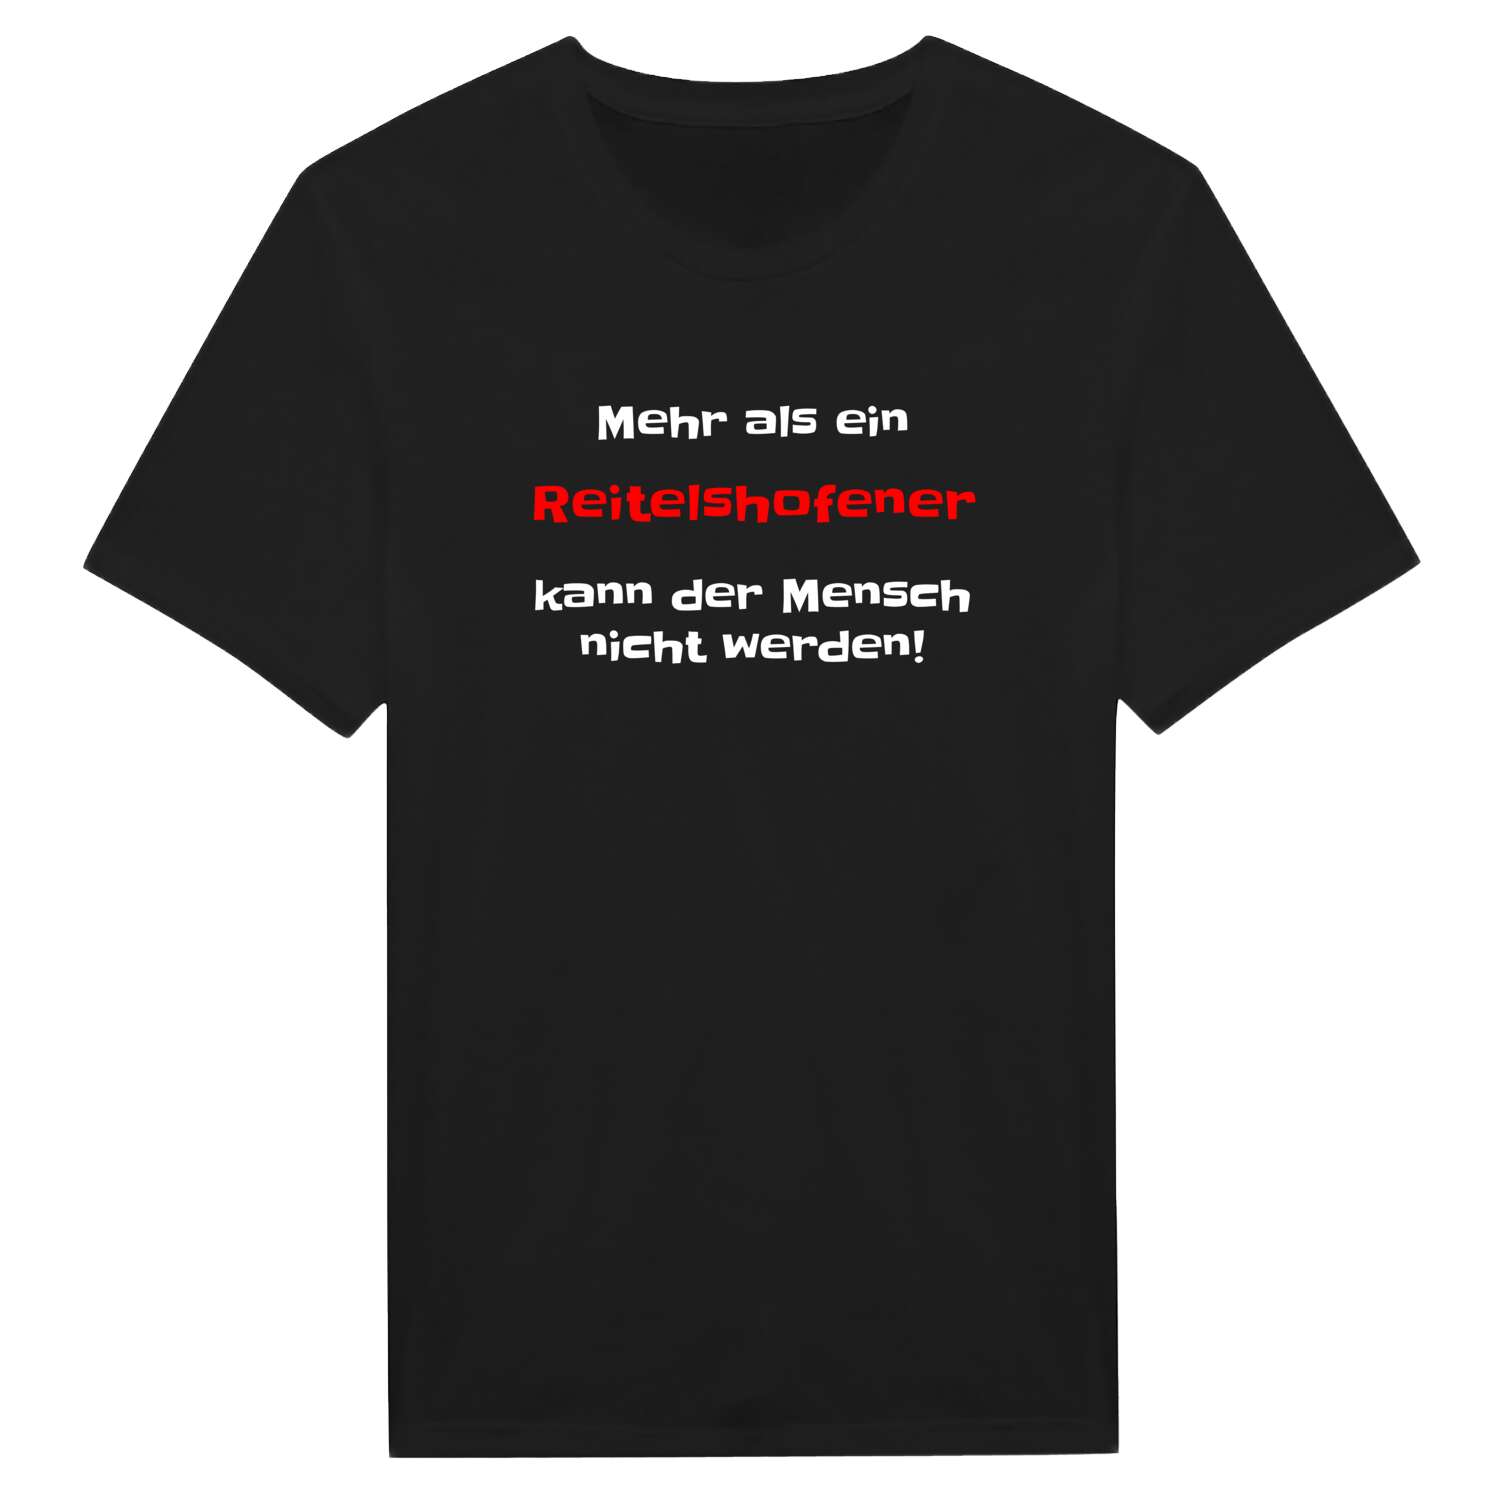 Reitelshofen T-Shirt »Mehr als ein«